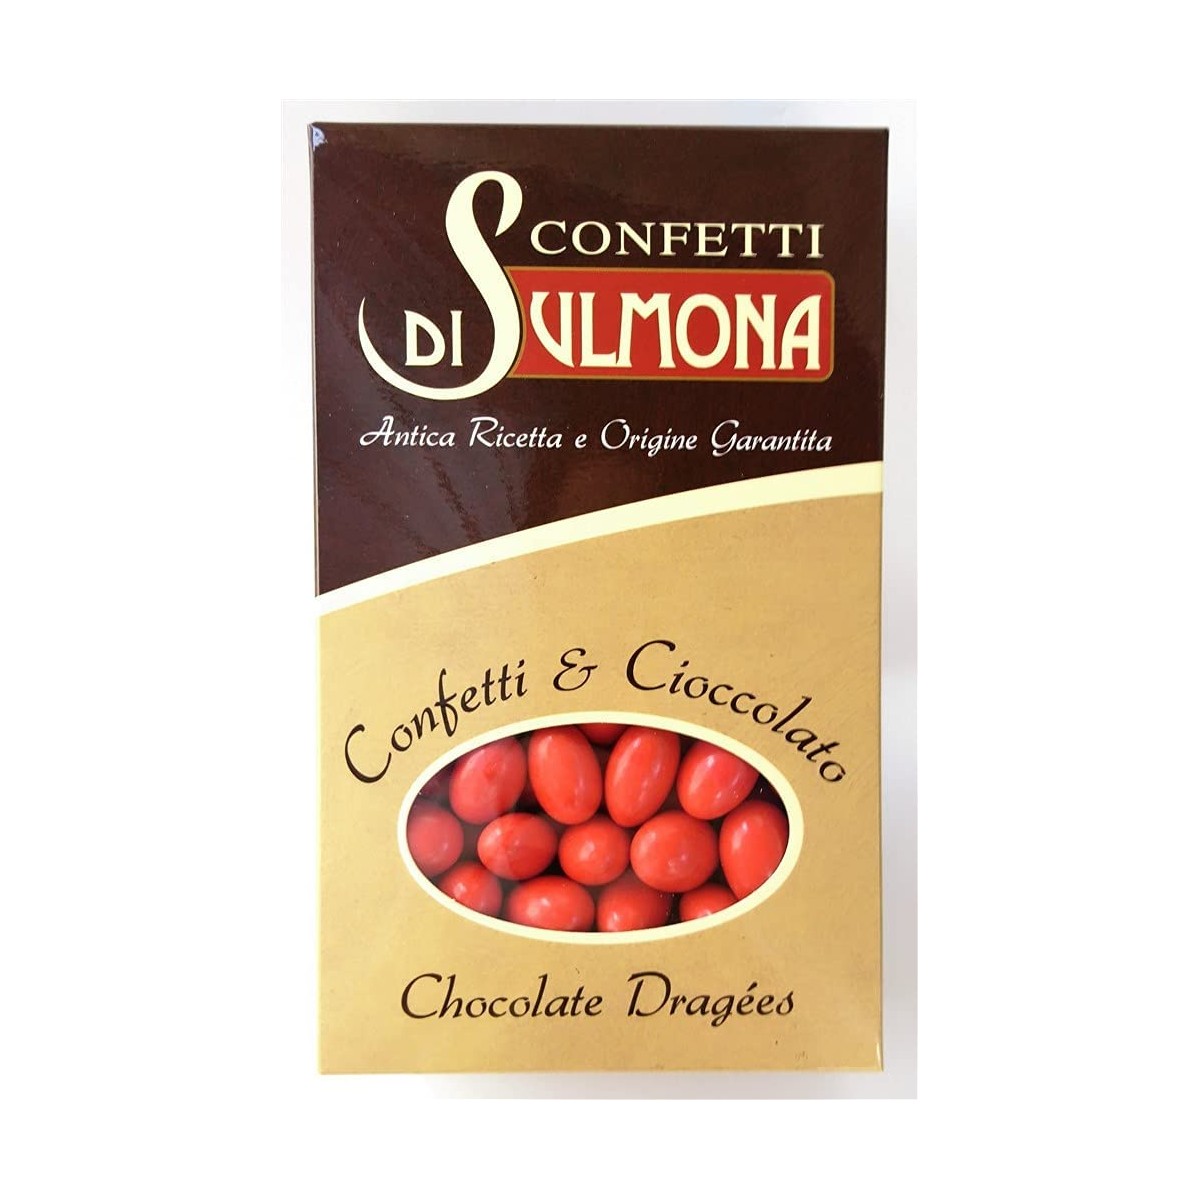 Confetti di Sulmona Ciocomandorla rossi, doppio cioccolato